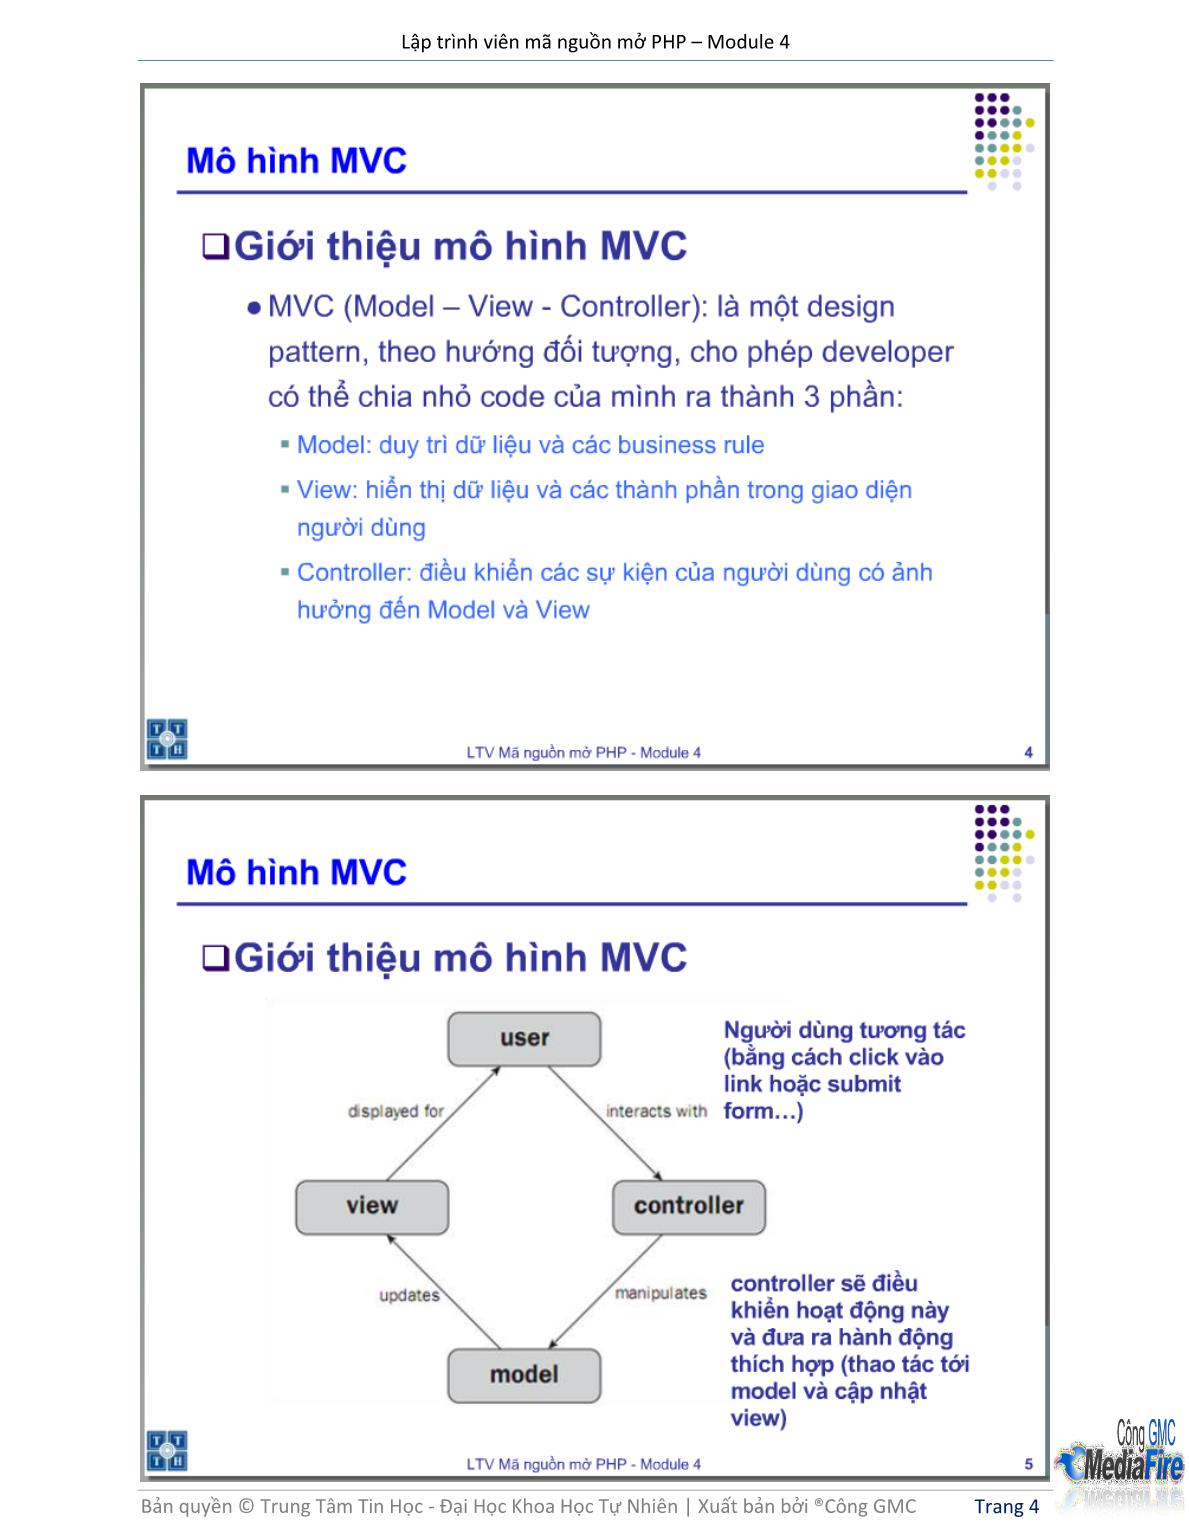 Bài giảng Lập trình viên mã nguồn mở PHP - Module 4, Bài 1: Mô hình MVC - Trường Đại học Khoa học tự nhiên - Đại học Quốc gia TP Hồ Chí Minh trang 4